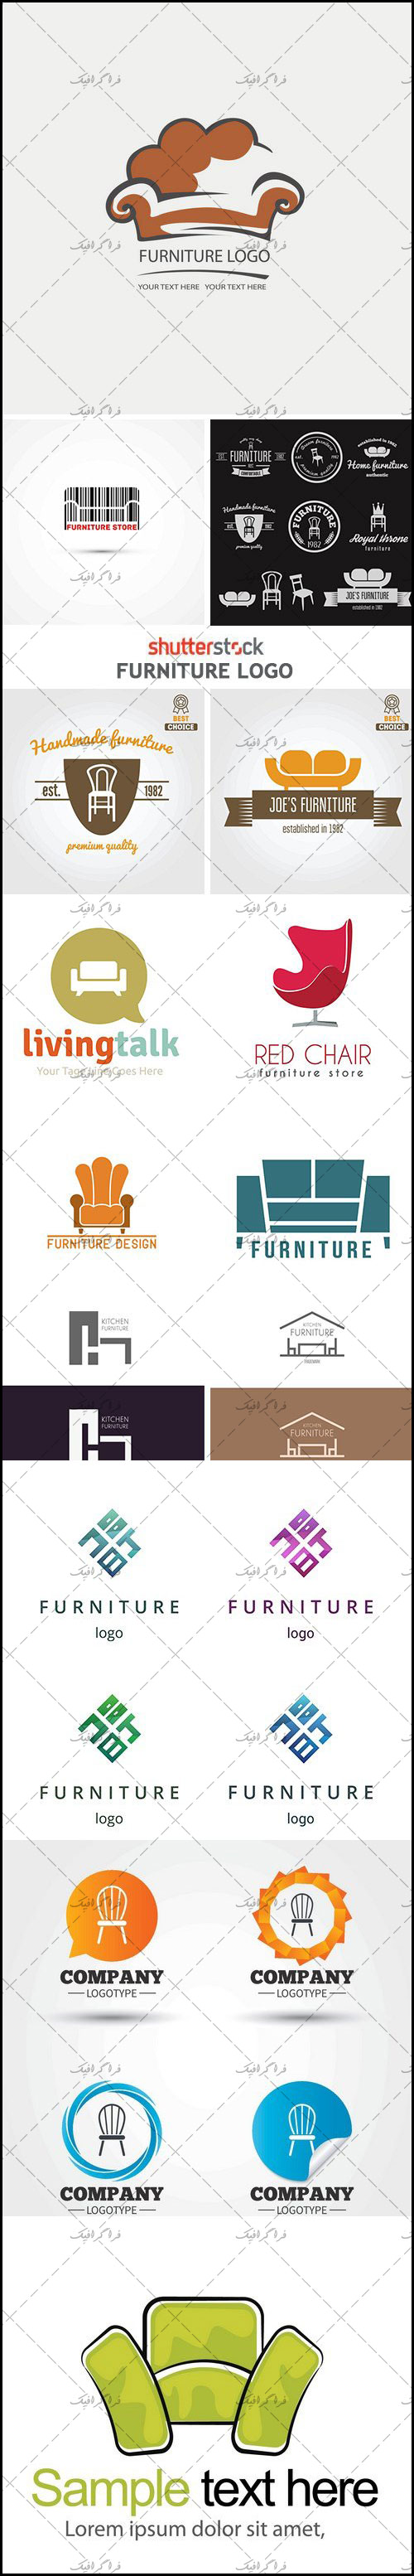 دانلود لوگو های مبلمان منزل - Furniture Logos